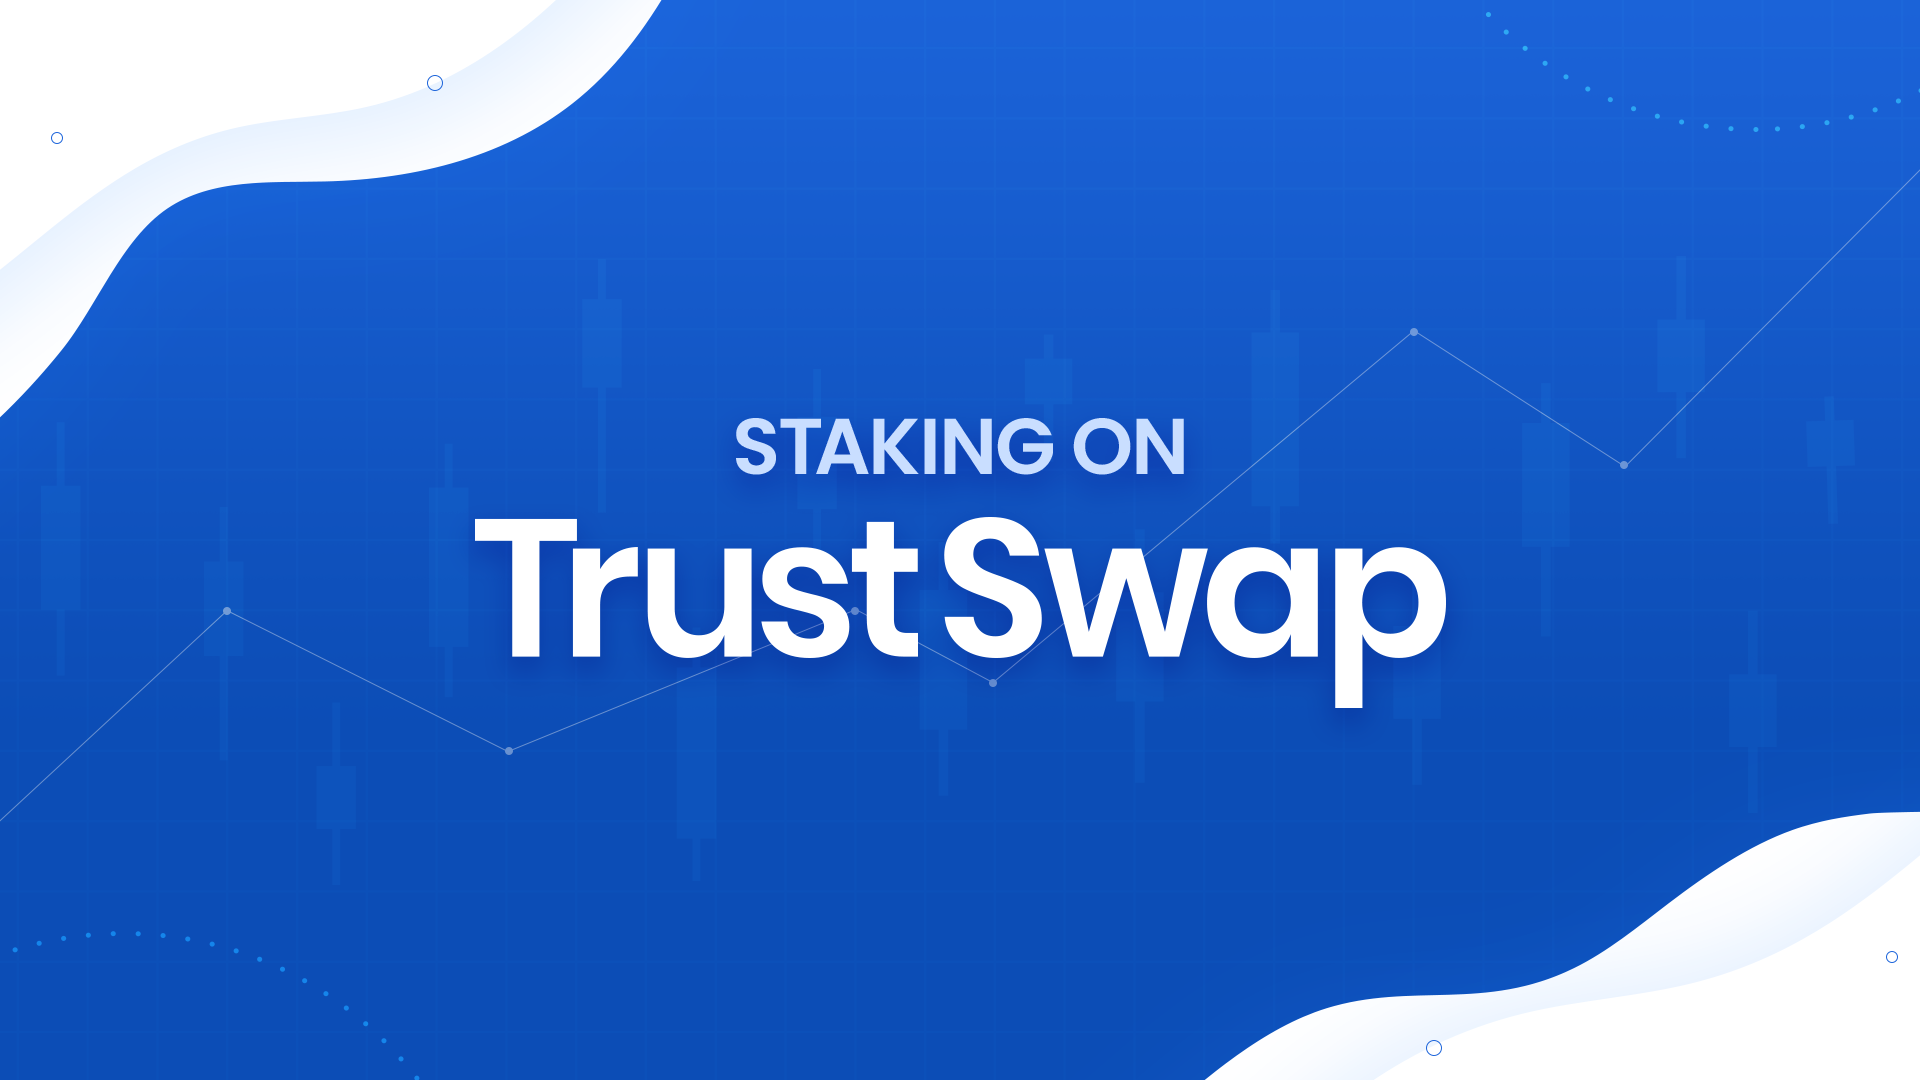 Staking on TrustSwap